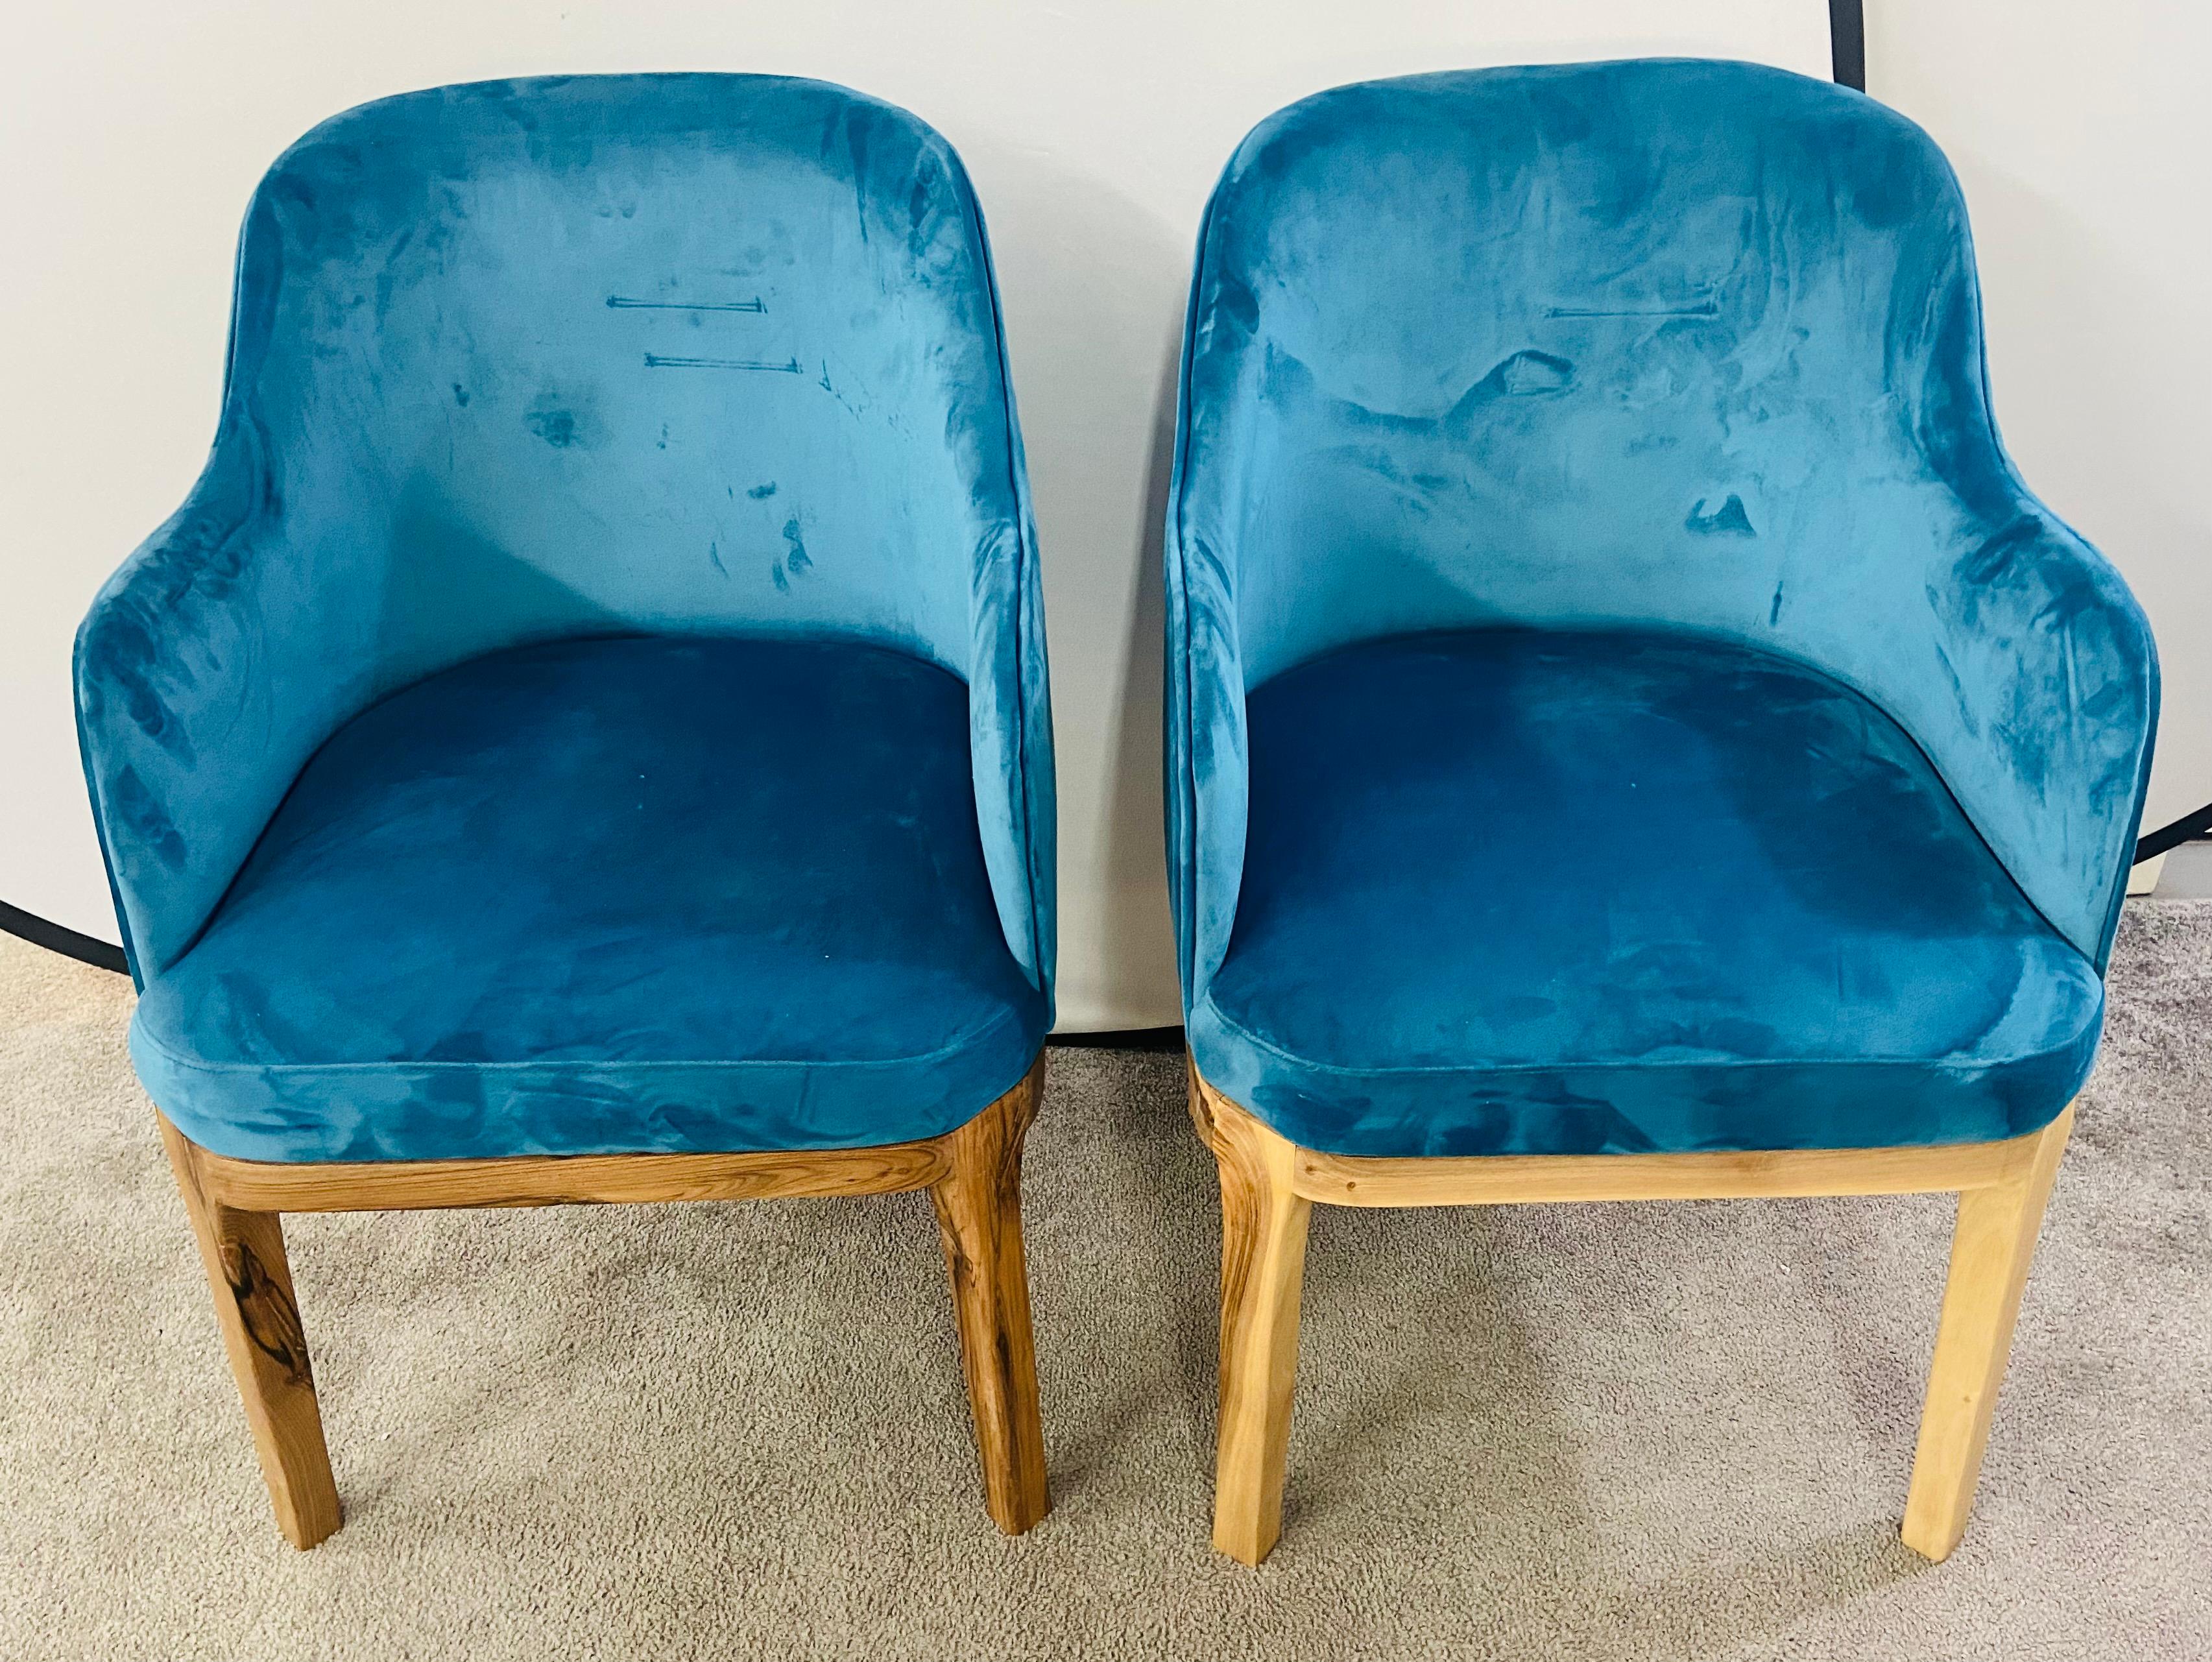 Une paire élégante de chaises baril de style Mid Century Modern. Les chaises ont été récemment recouvertes d'un velours bleu vif électrique, une couleur très recherchée et à la mode. Les chaises de haute qualité sont fabriquées en bois de noyer. La